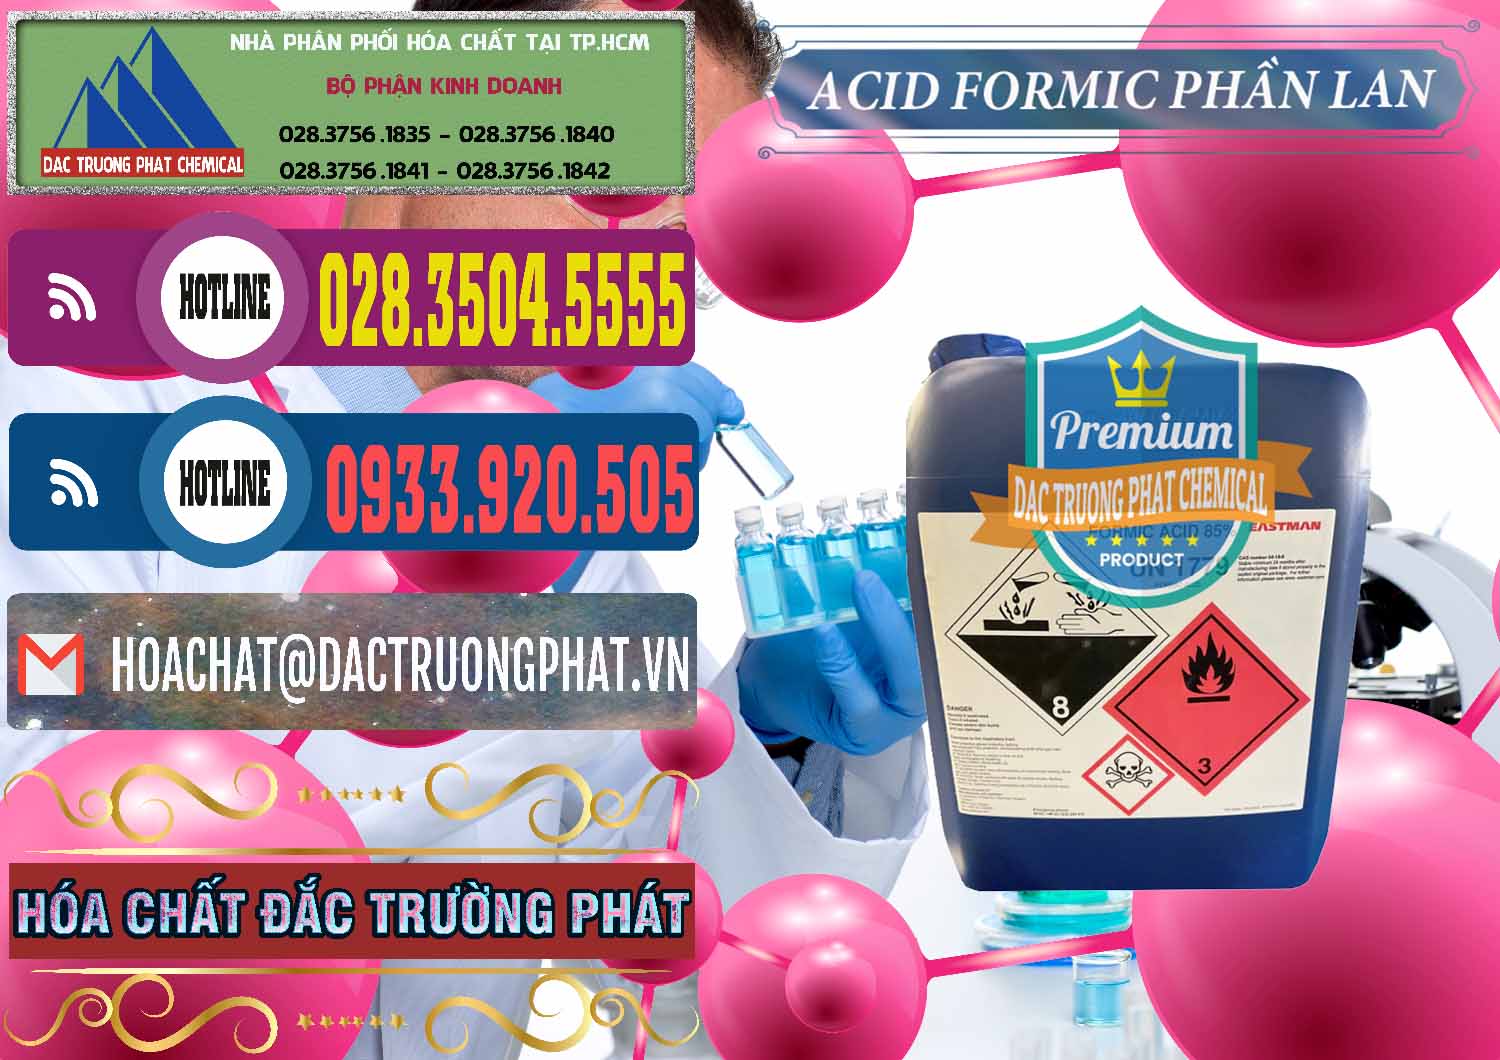 Chuyên bán & phân phối Acid Formic - Axit Formic Phần Lan Finland - 0376 - Nhà cung ứng và phân phối hóa chất tại TP.HCM - muabanhoachat.com.vn